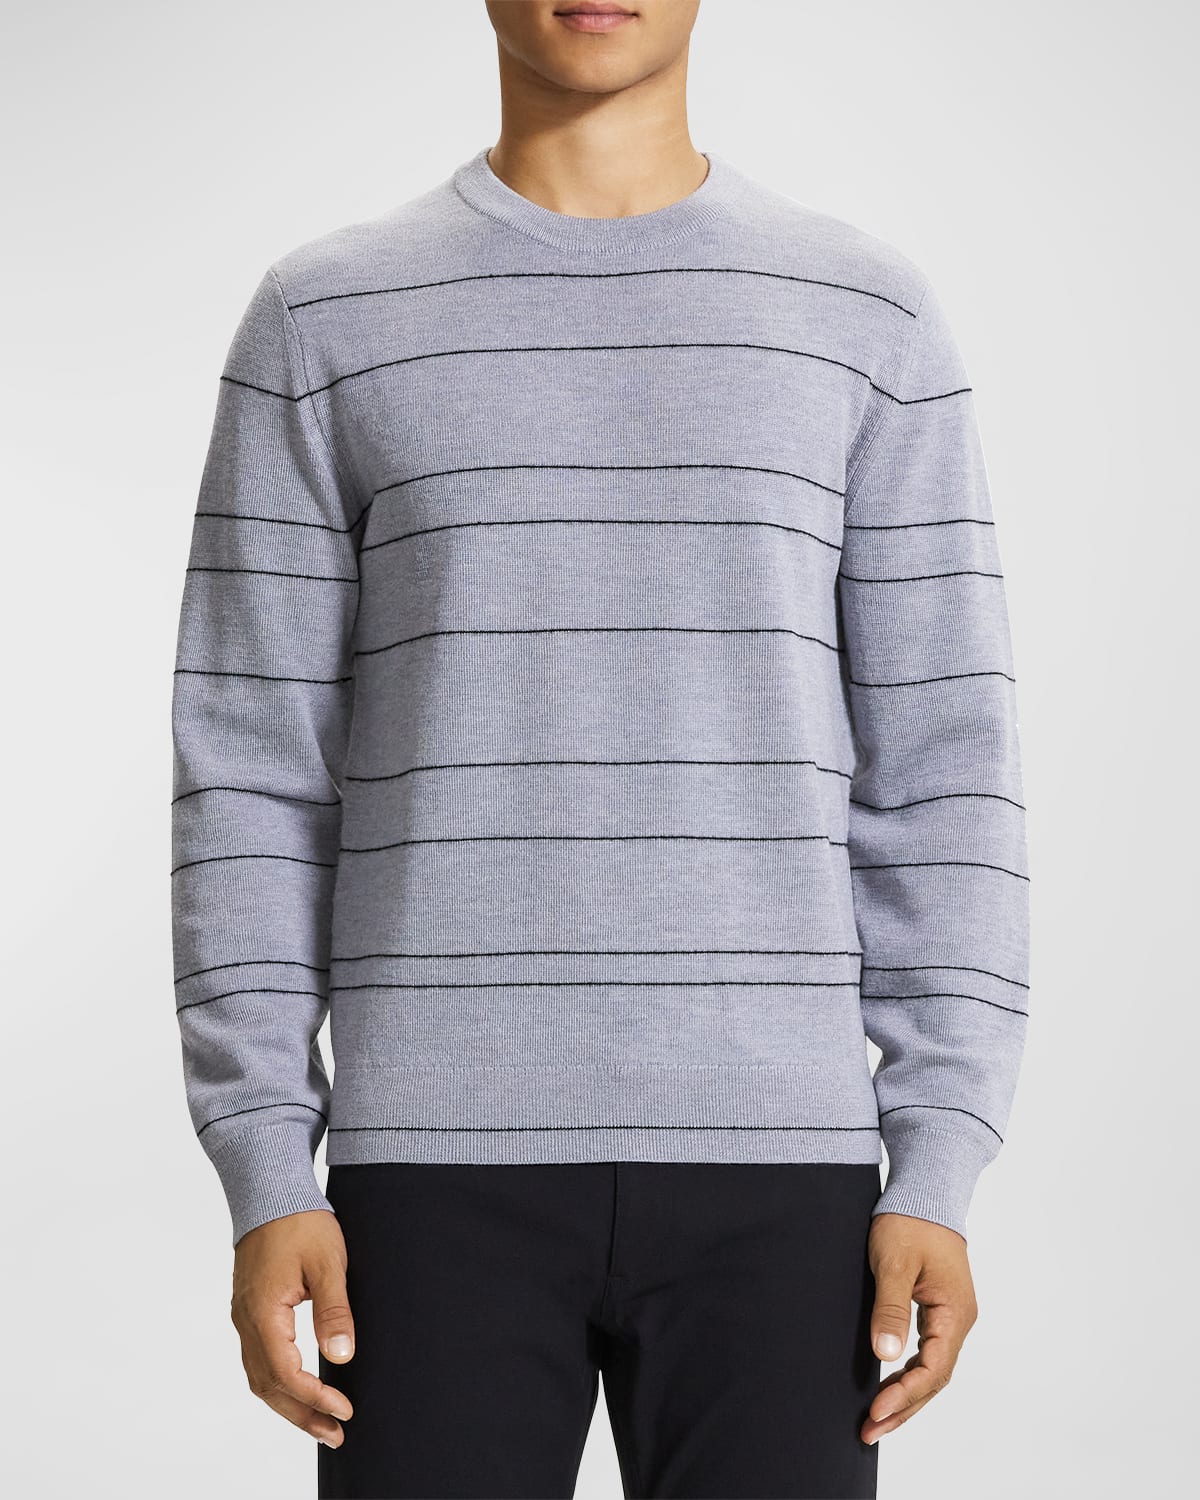 Men's Kenny Striped Wool Sweater